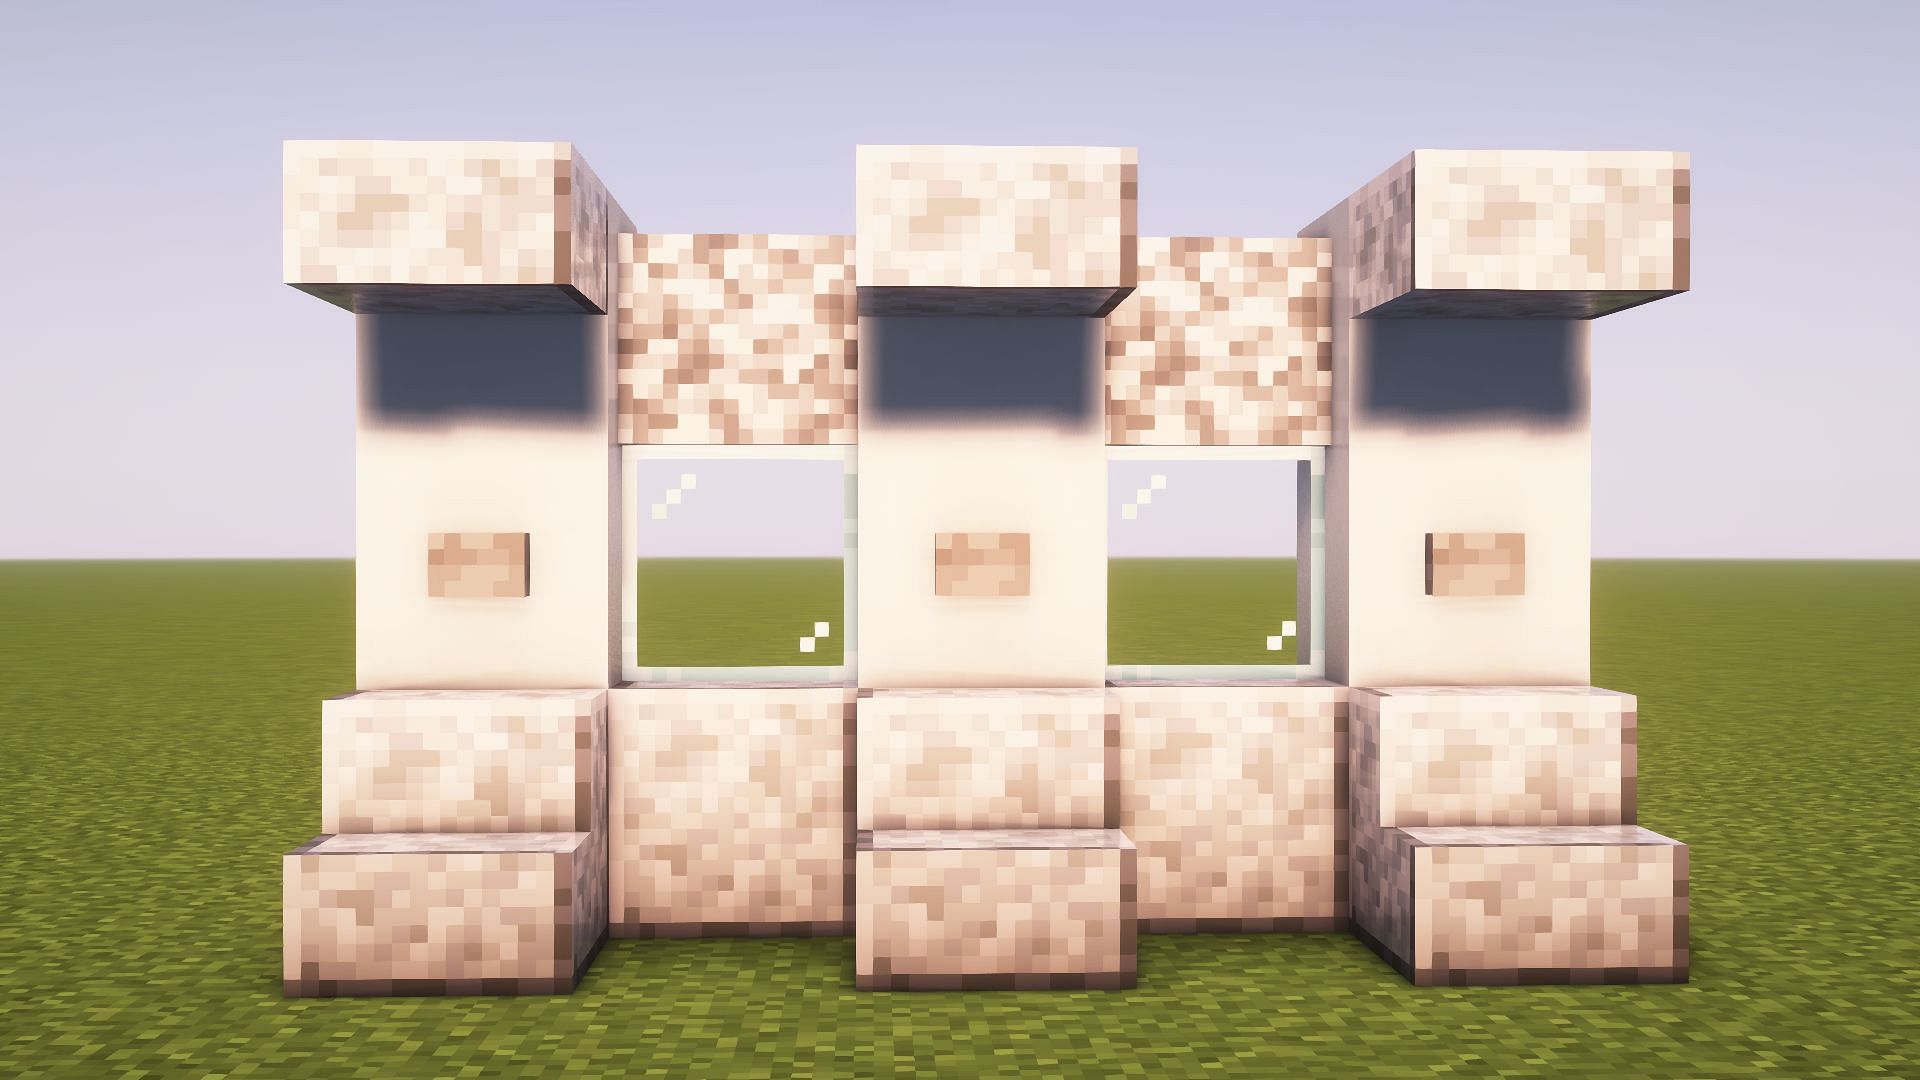 White concrete and diorite walls in Minecraft (Image via Mojang)